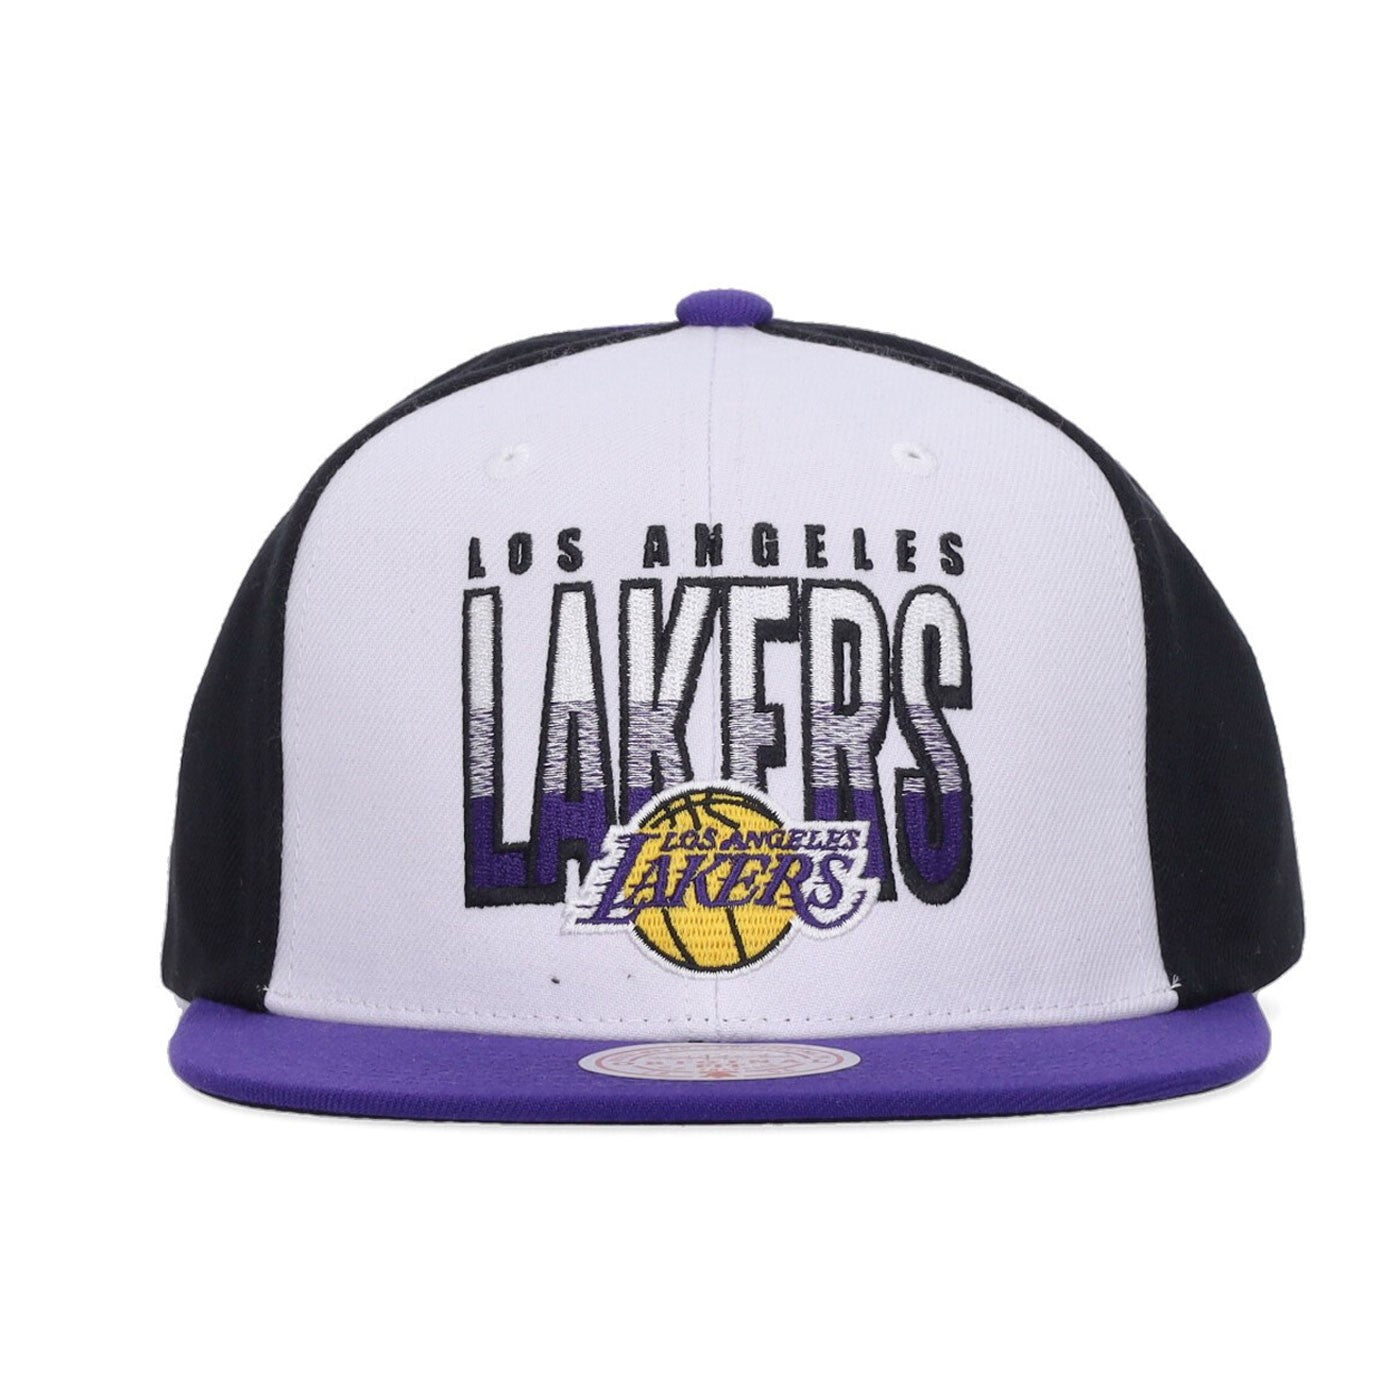 Multicolor LA Lakers negra blanca y violeta snapback billboard 2 NBA